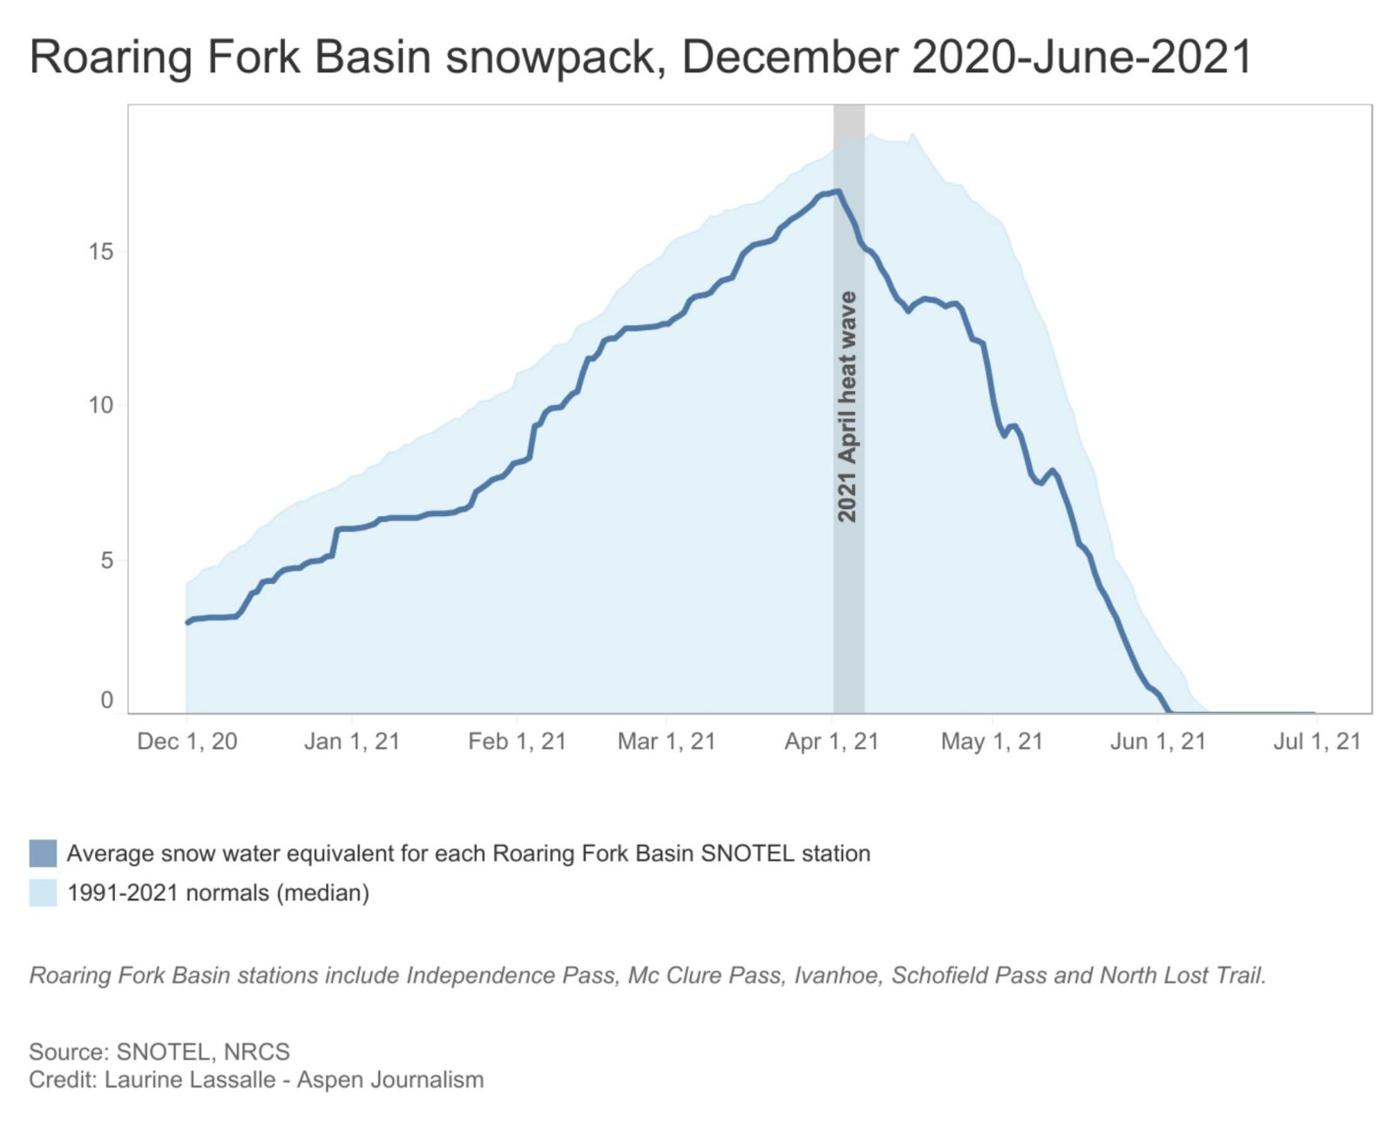 Scientists studying water supply focus on weeks following peak snowpack, Western Colorado